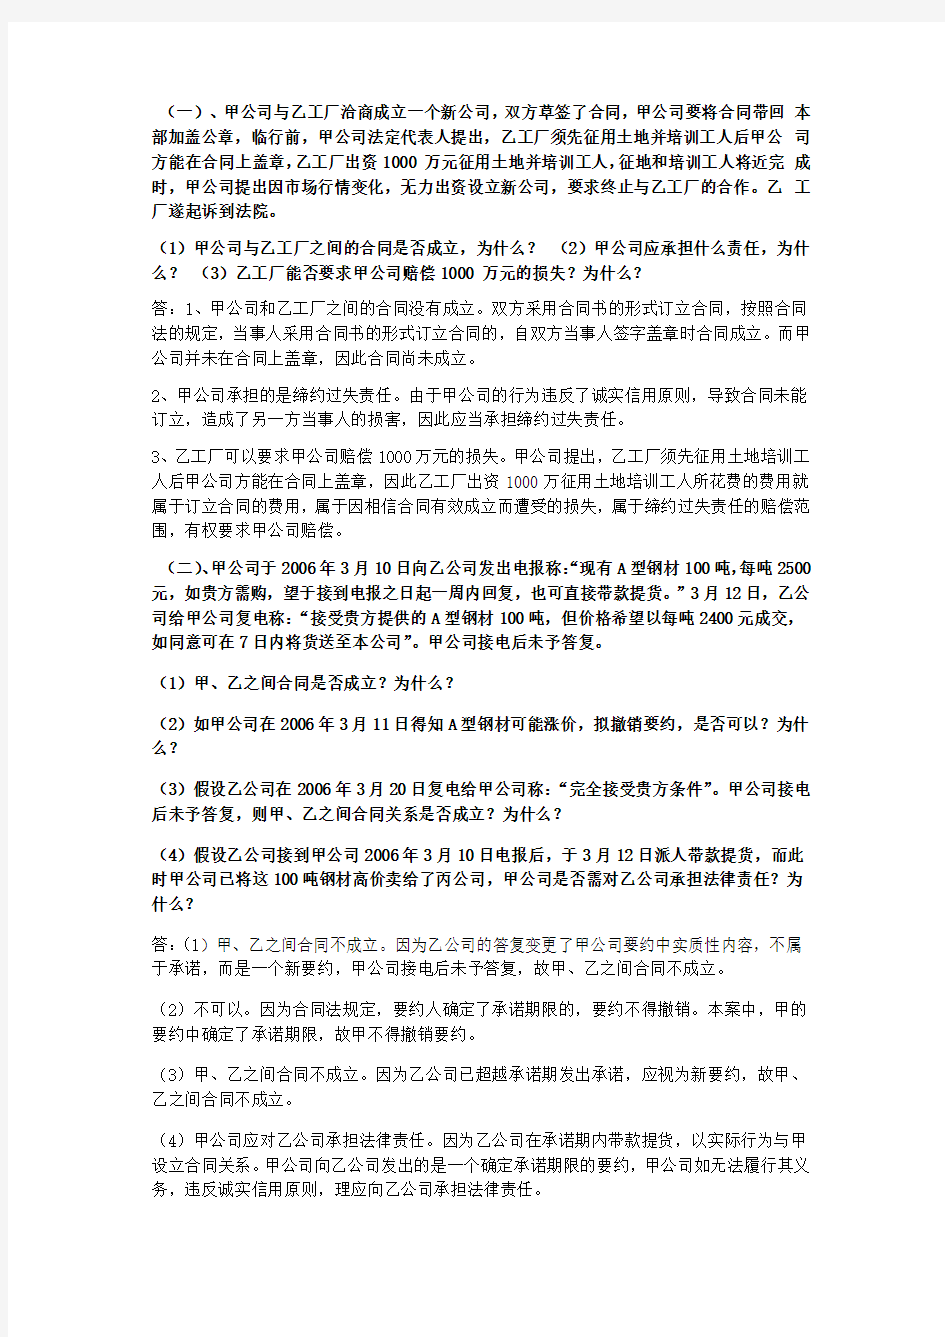 经济法-考试案例分析题-总结-期末复习重点-上海工程技术大学--2014教学文案